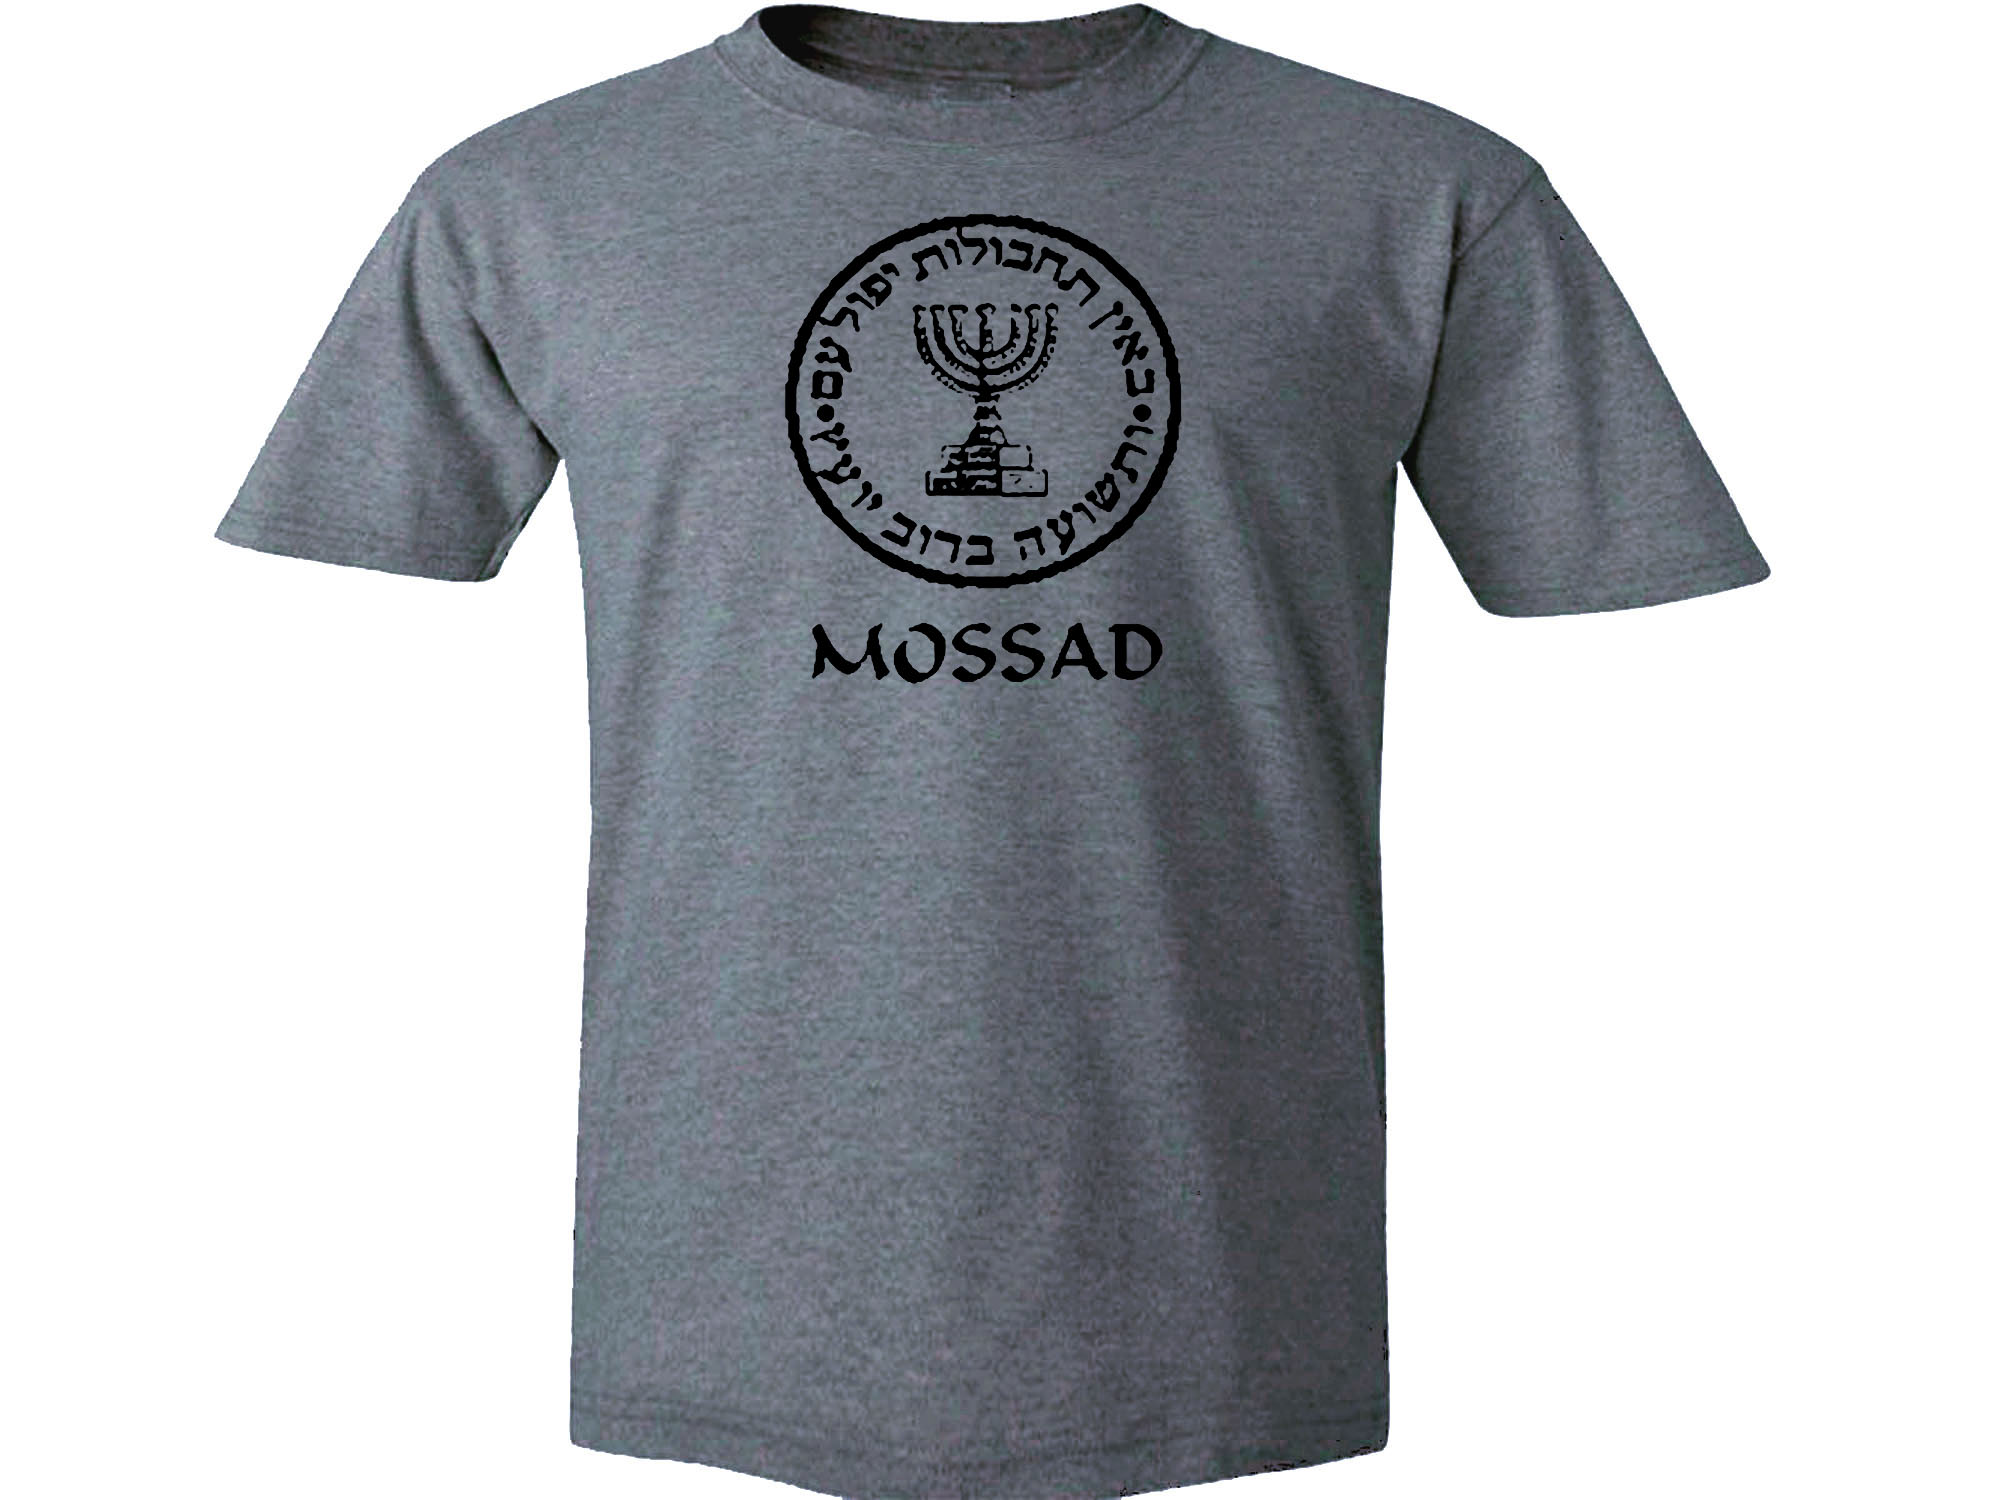 Israel secret service Mossad Israel CIA Hebrew gray t-shirt